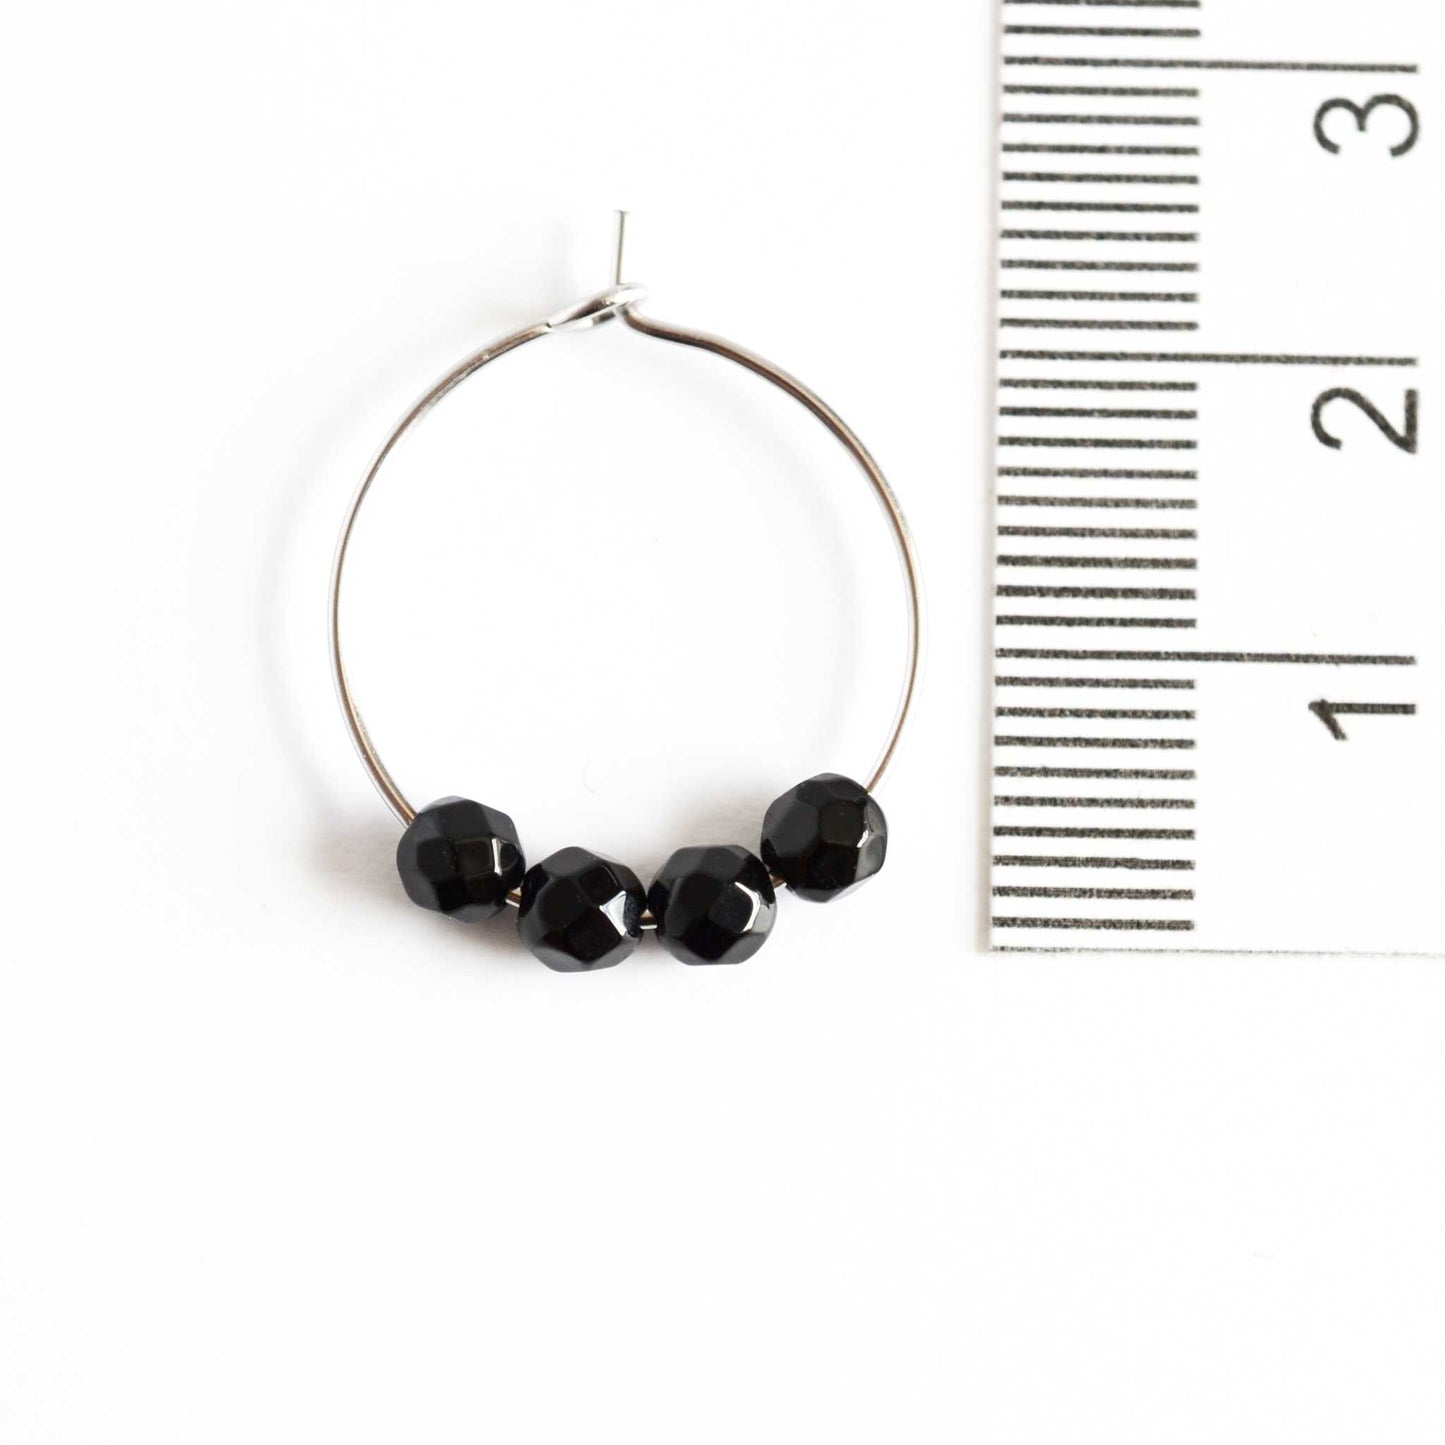 2cm diameter Onyx black hoop earrings next to ruler